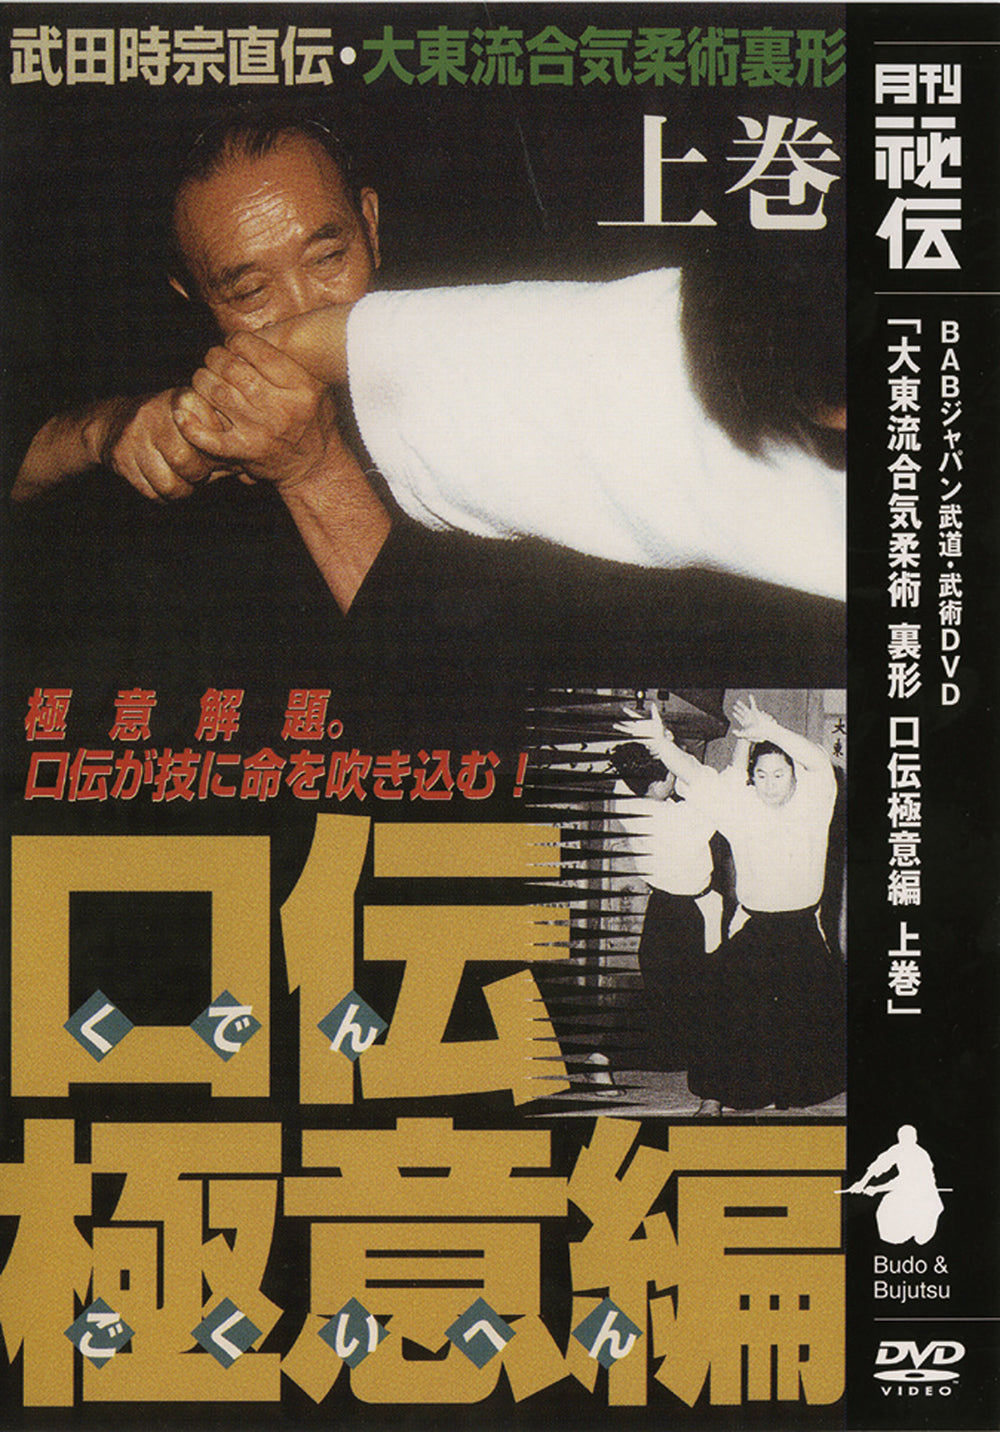 Daito Ryu Aikijujutsu: Técnicas Nikajo Ura DVD 1